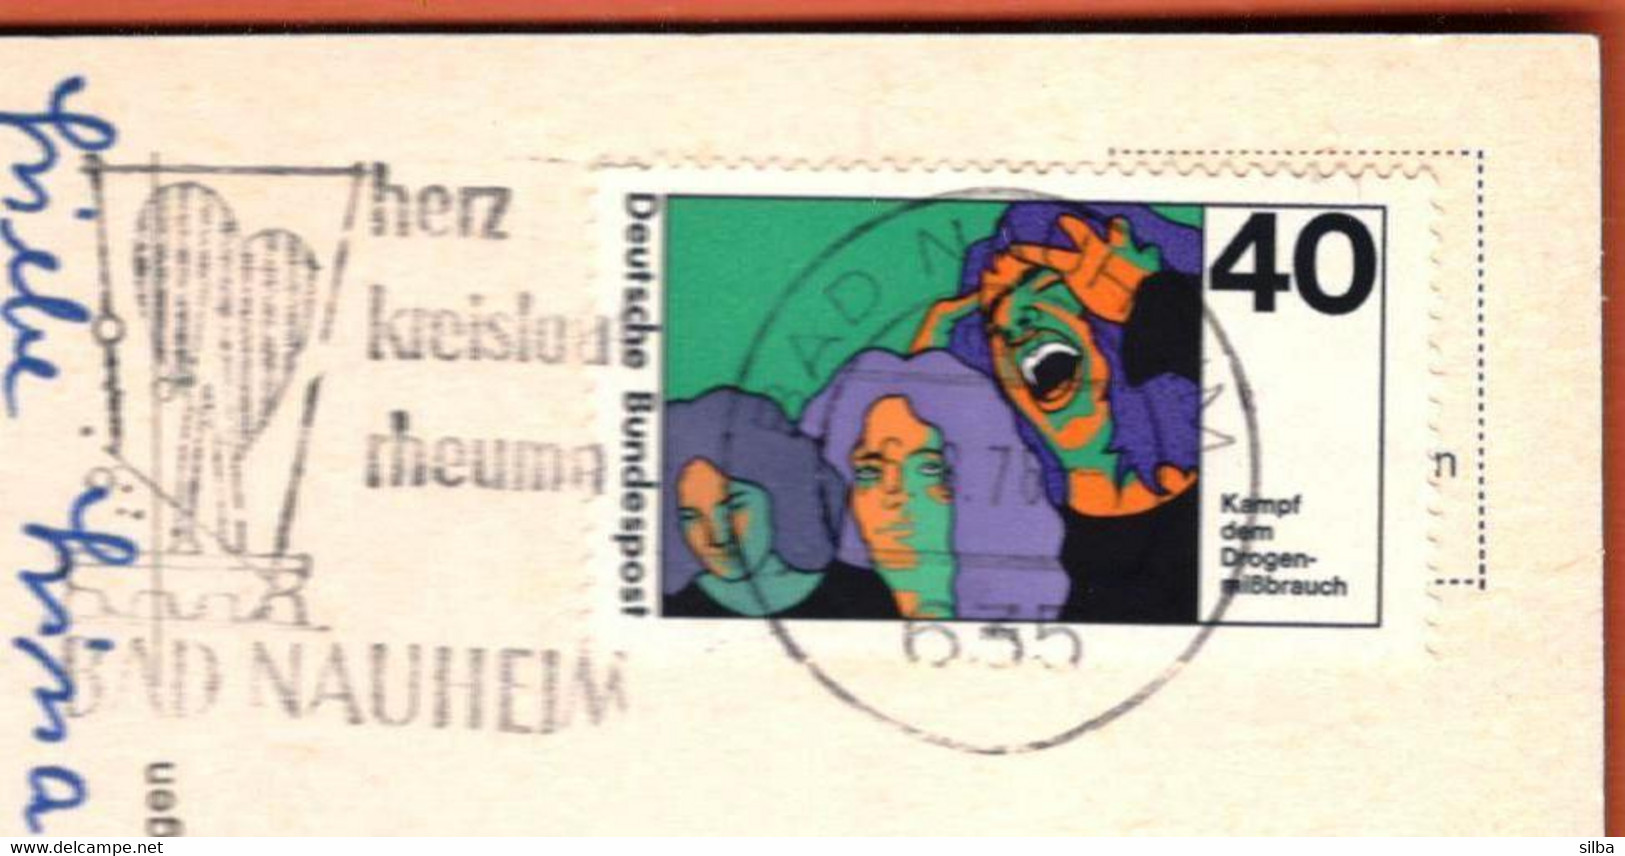 Germany Bad Nauheim 1976 / Herz, Kreislauf, Rheuma, Heart, Circulation, Rheumatism / Health / Machine Stamp ATM - Bäderwesen